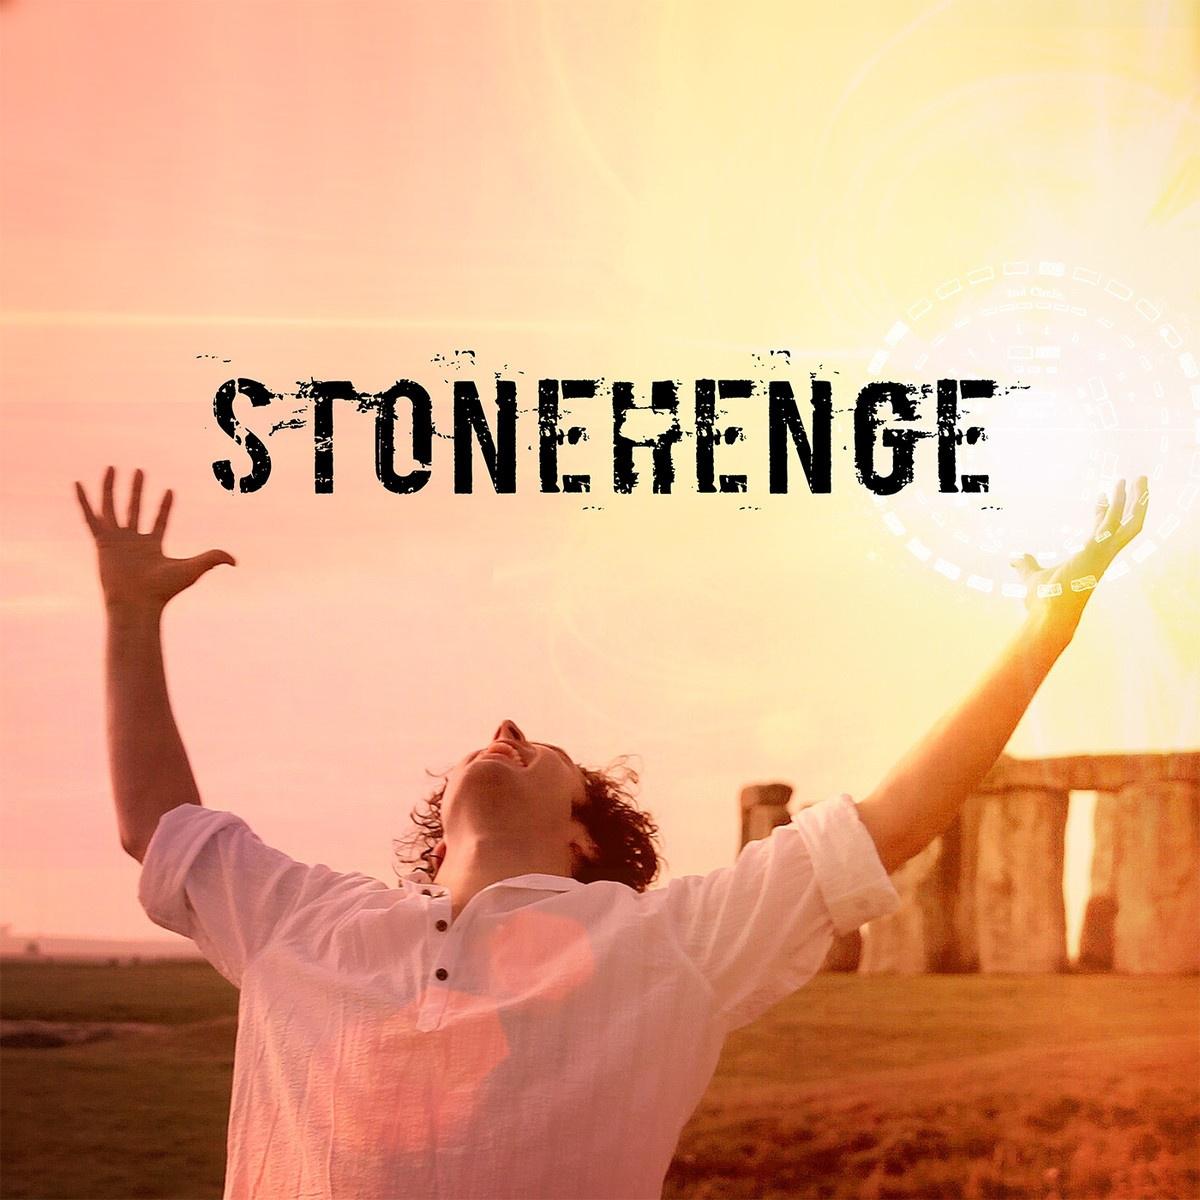 Stonehenge专辑